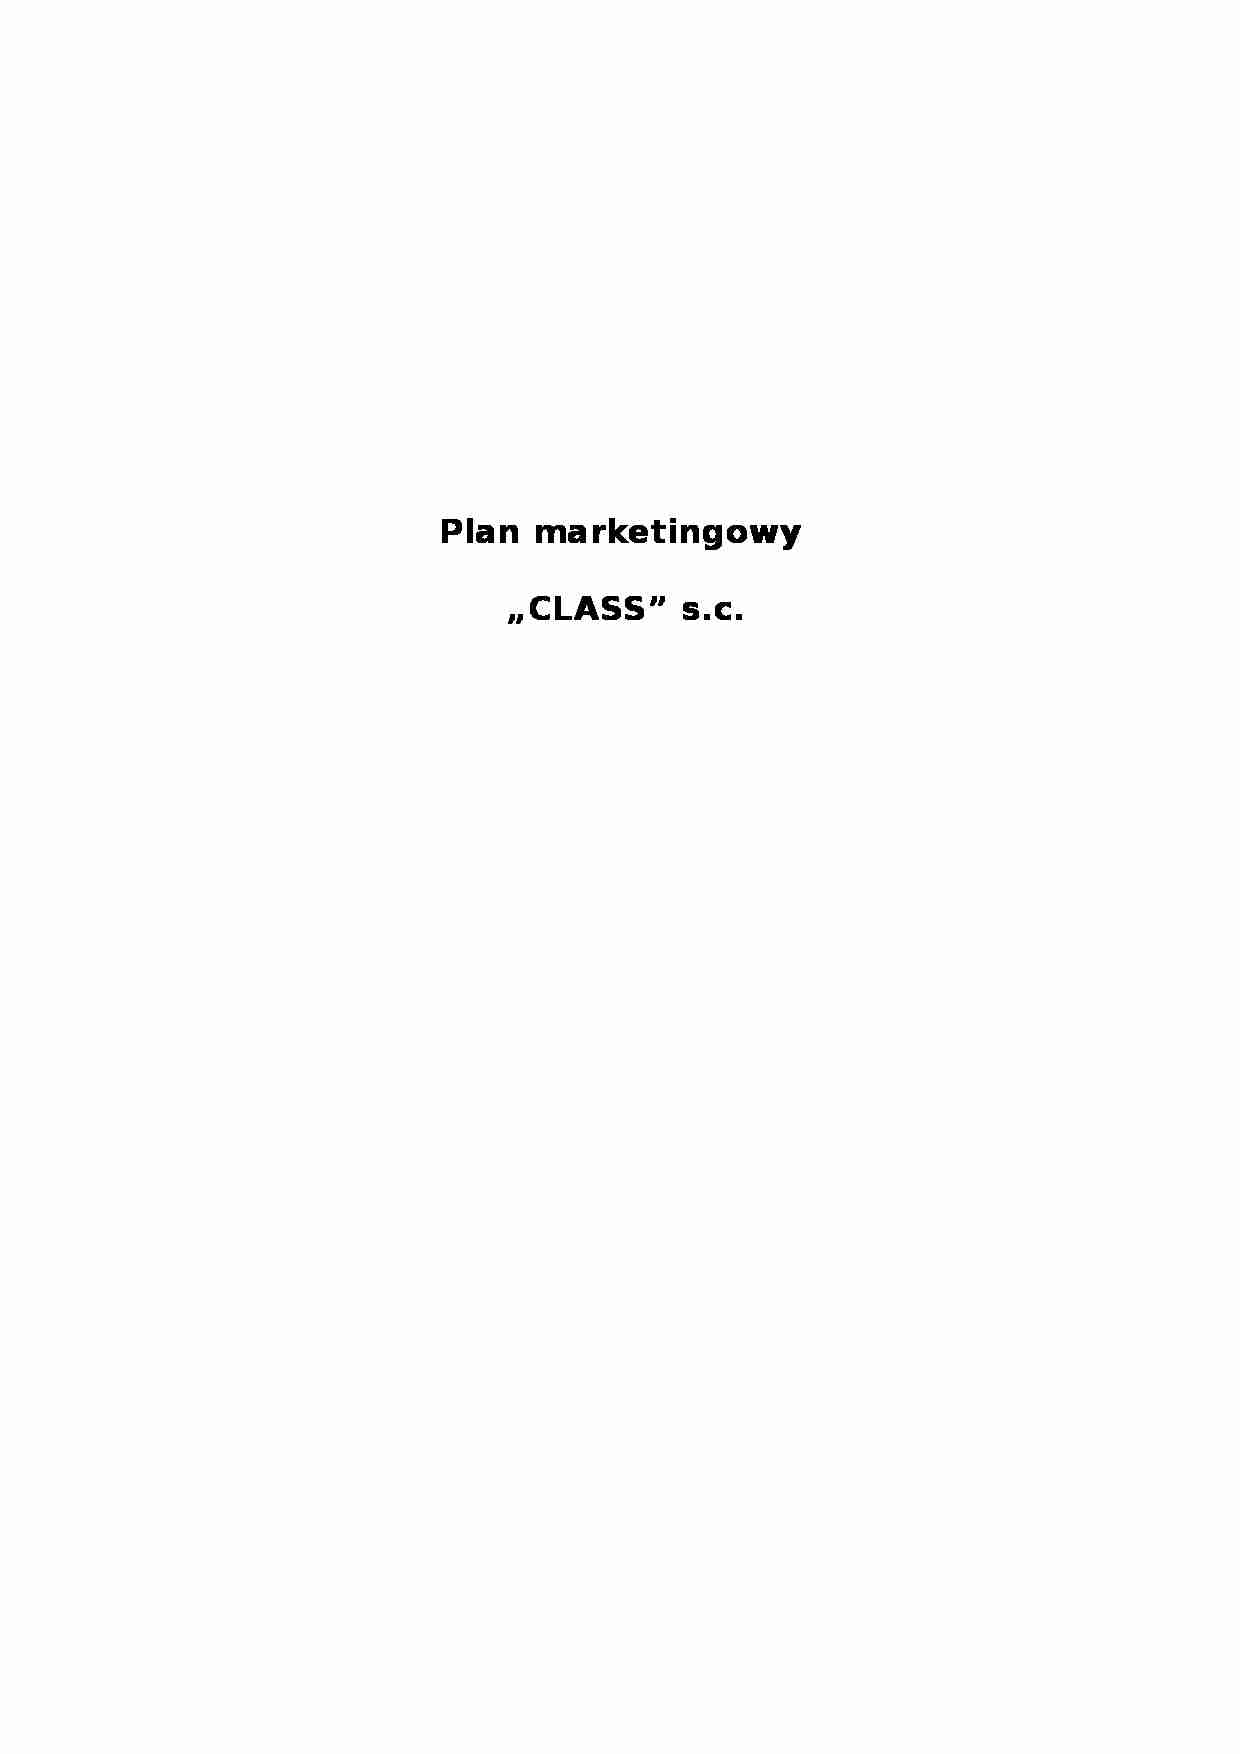 Plan marketingowy - restauracja - strona 1